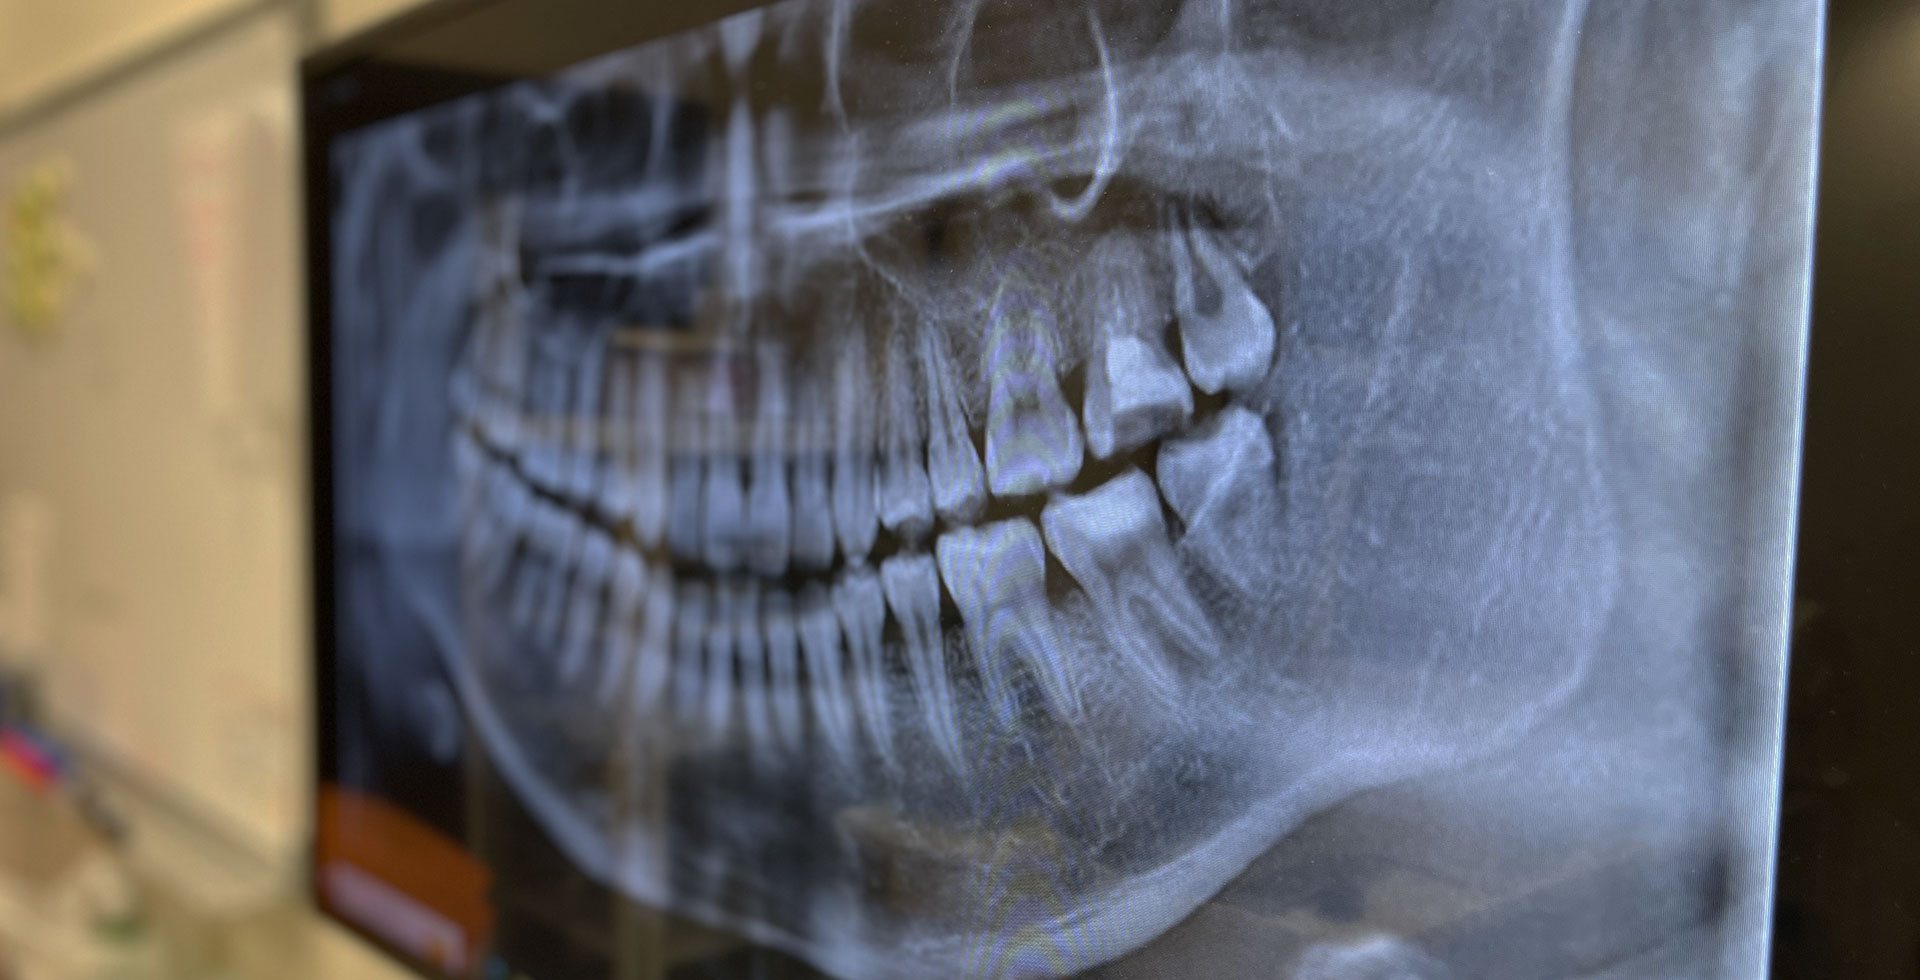 湘南台駅西口から徒歩3分の歯科・歯医者「湘南台いつき歯科」は、急患も大歓迎です。急な痛みが出たら我慢せずぜひ当院へお越しください。